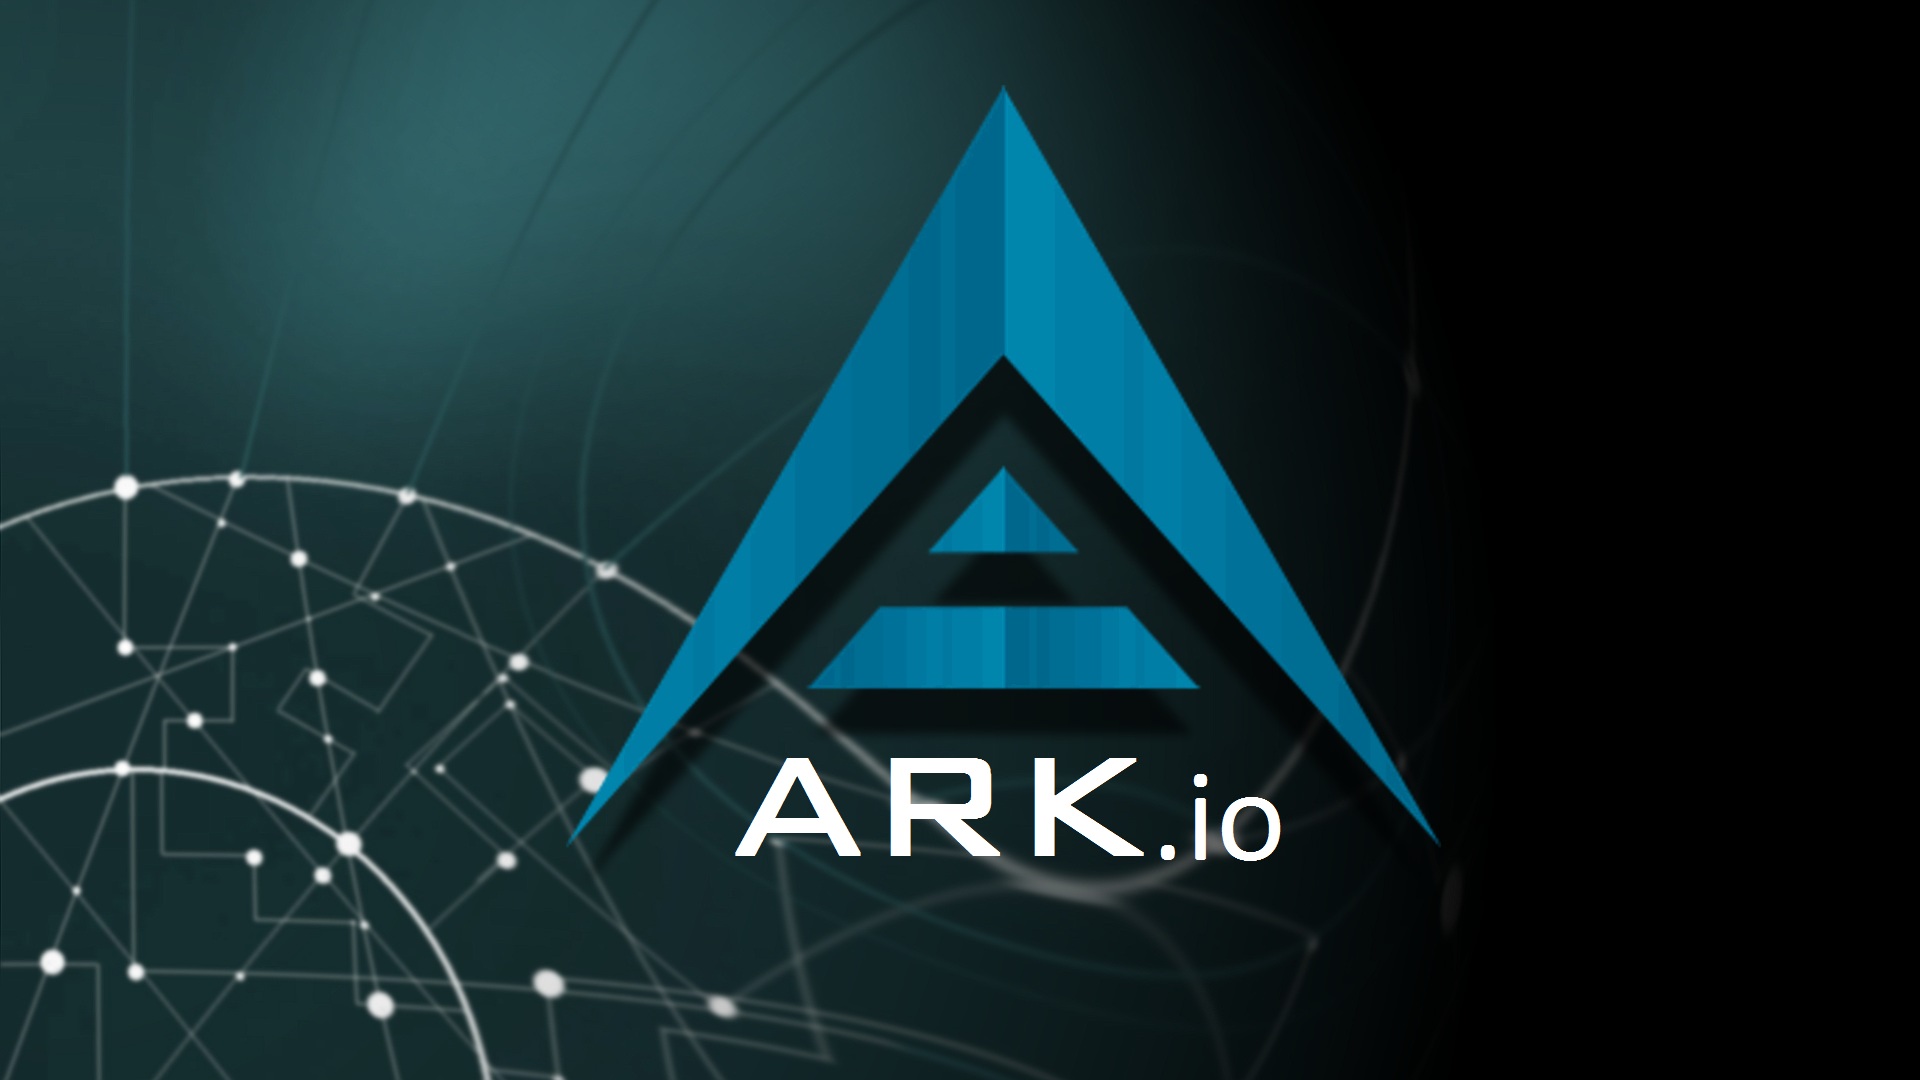 Ark Ecosystem salue la décision de Bercy d'encadrer les ICOs